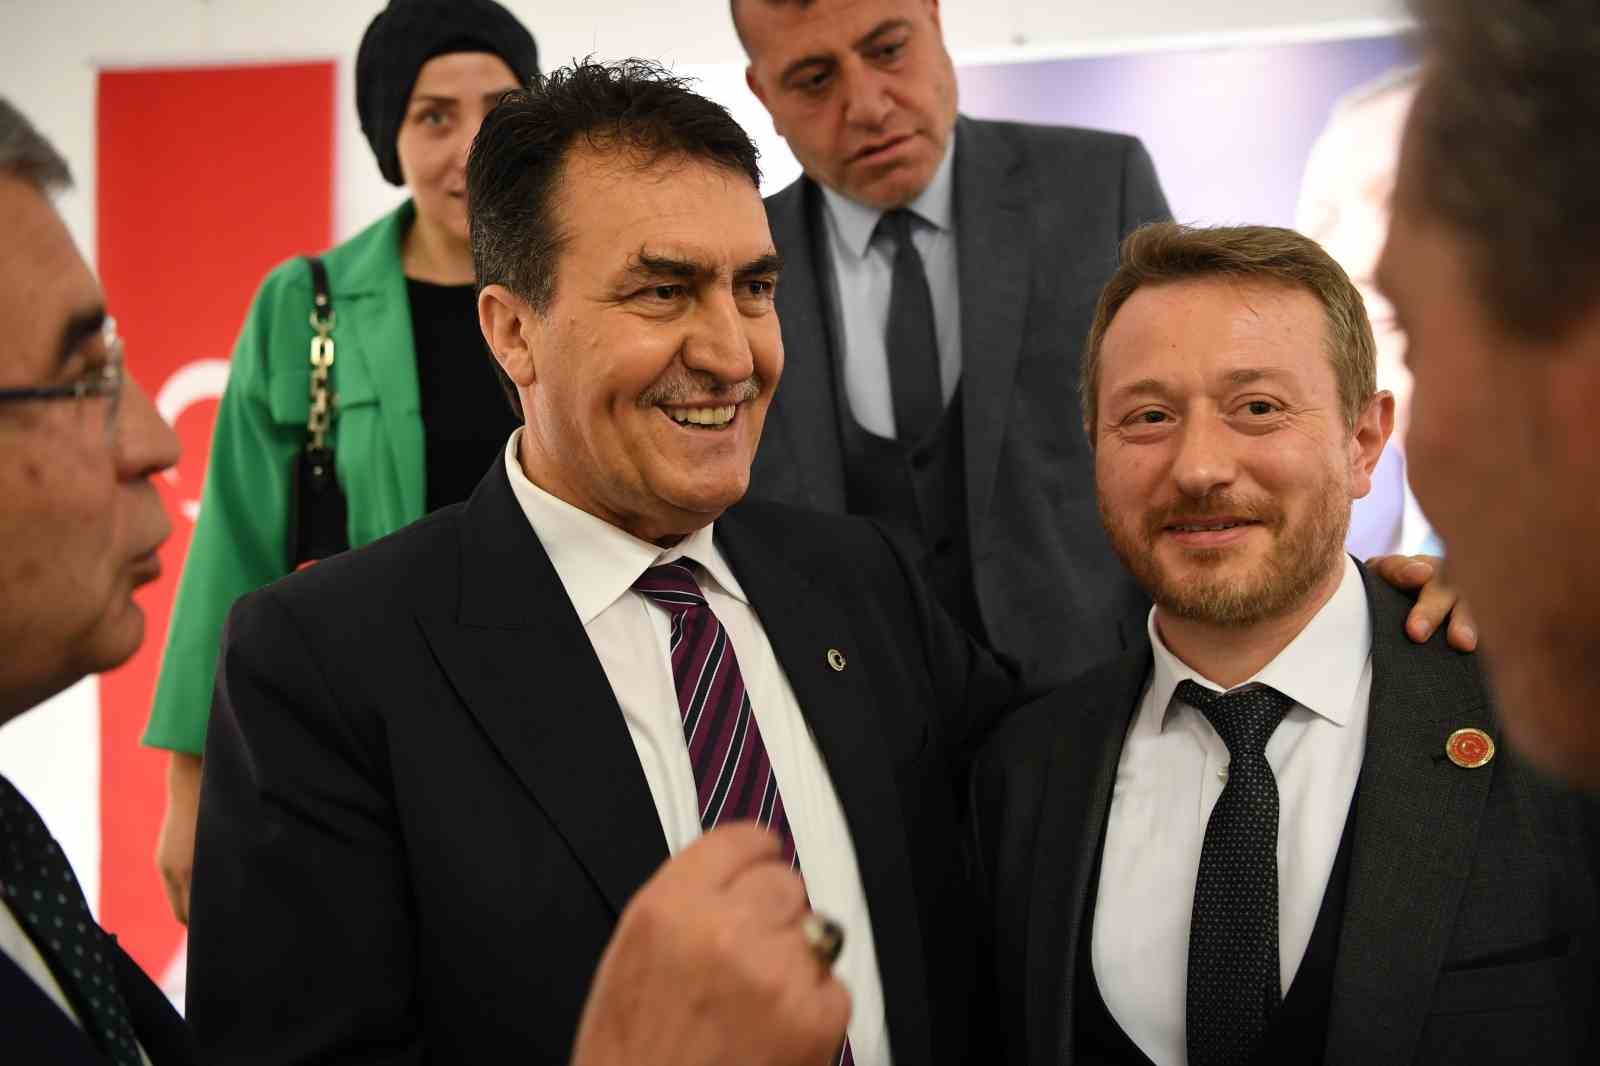 Başkan Dündar: “Belediyeciliği Türkiye’de en iyi yapan belediyeyiz”